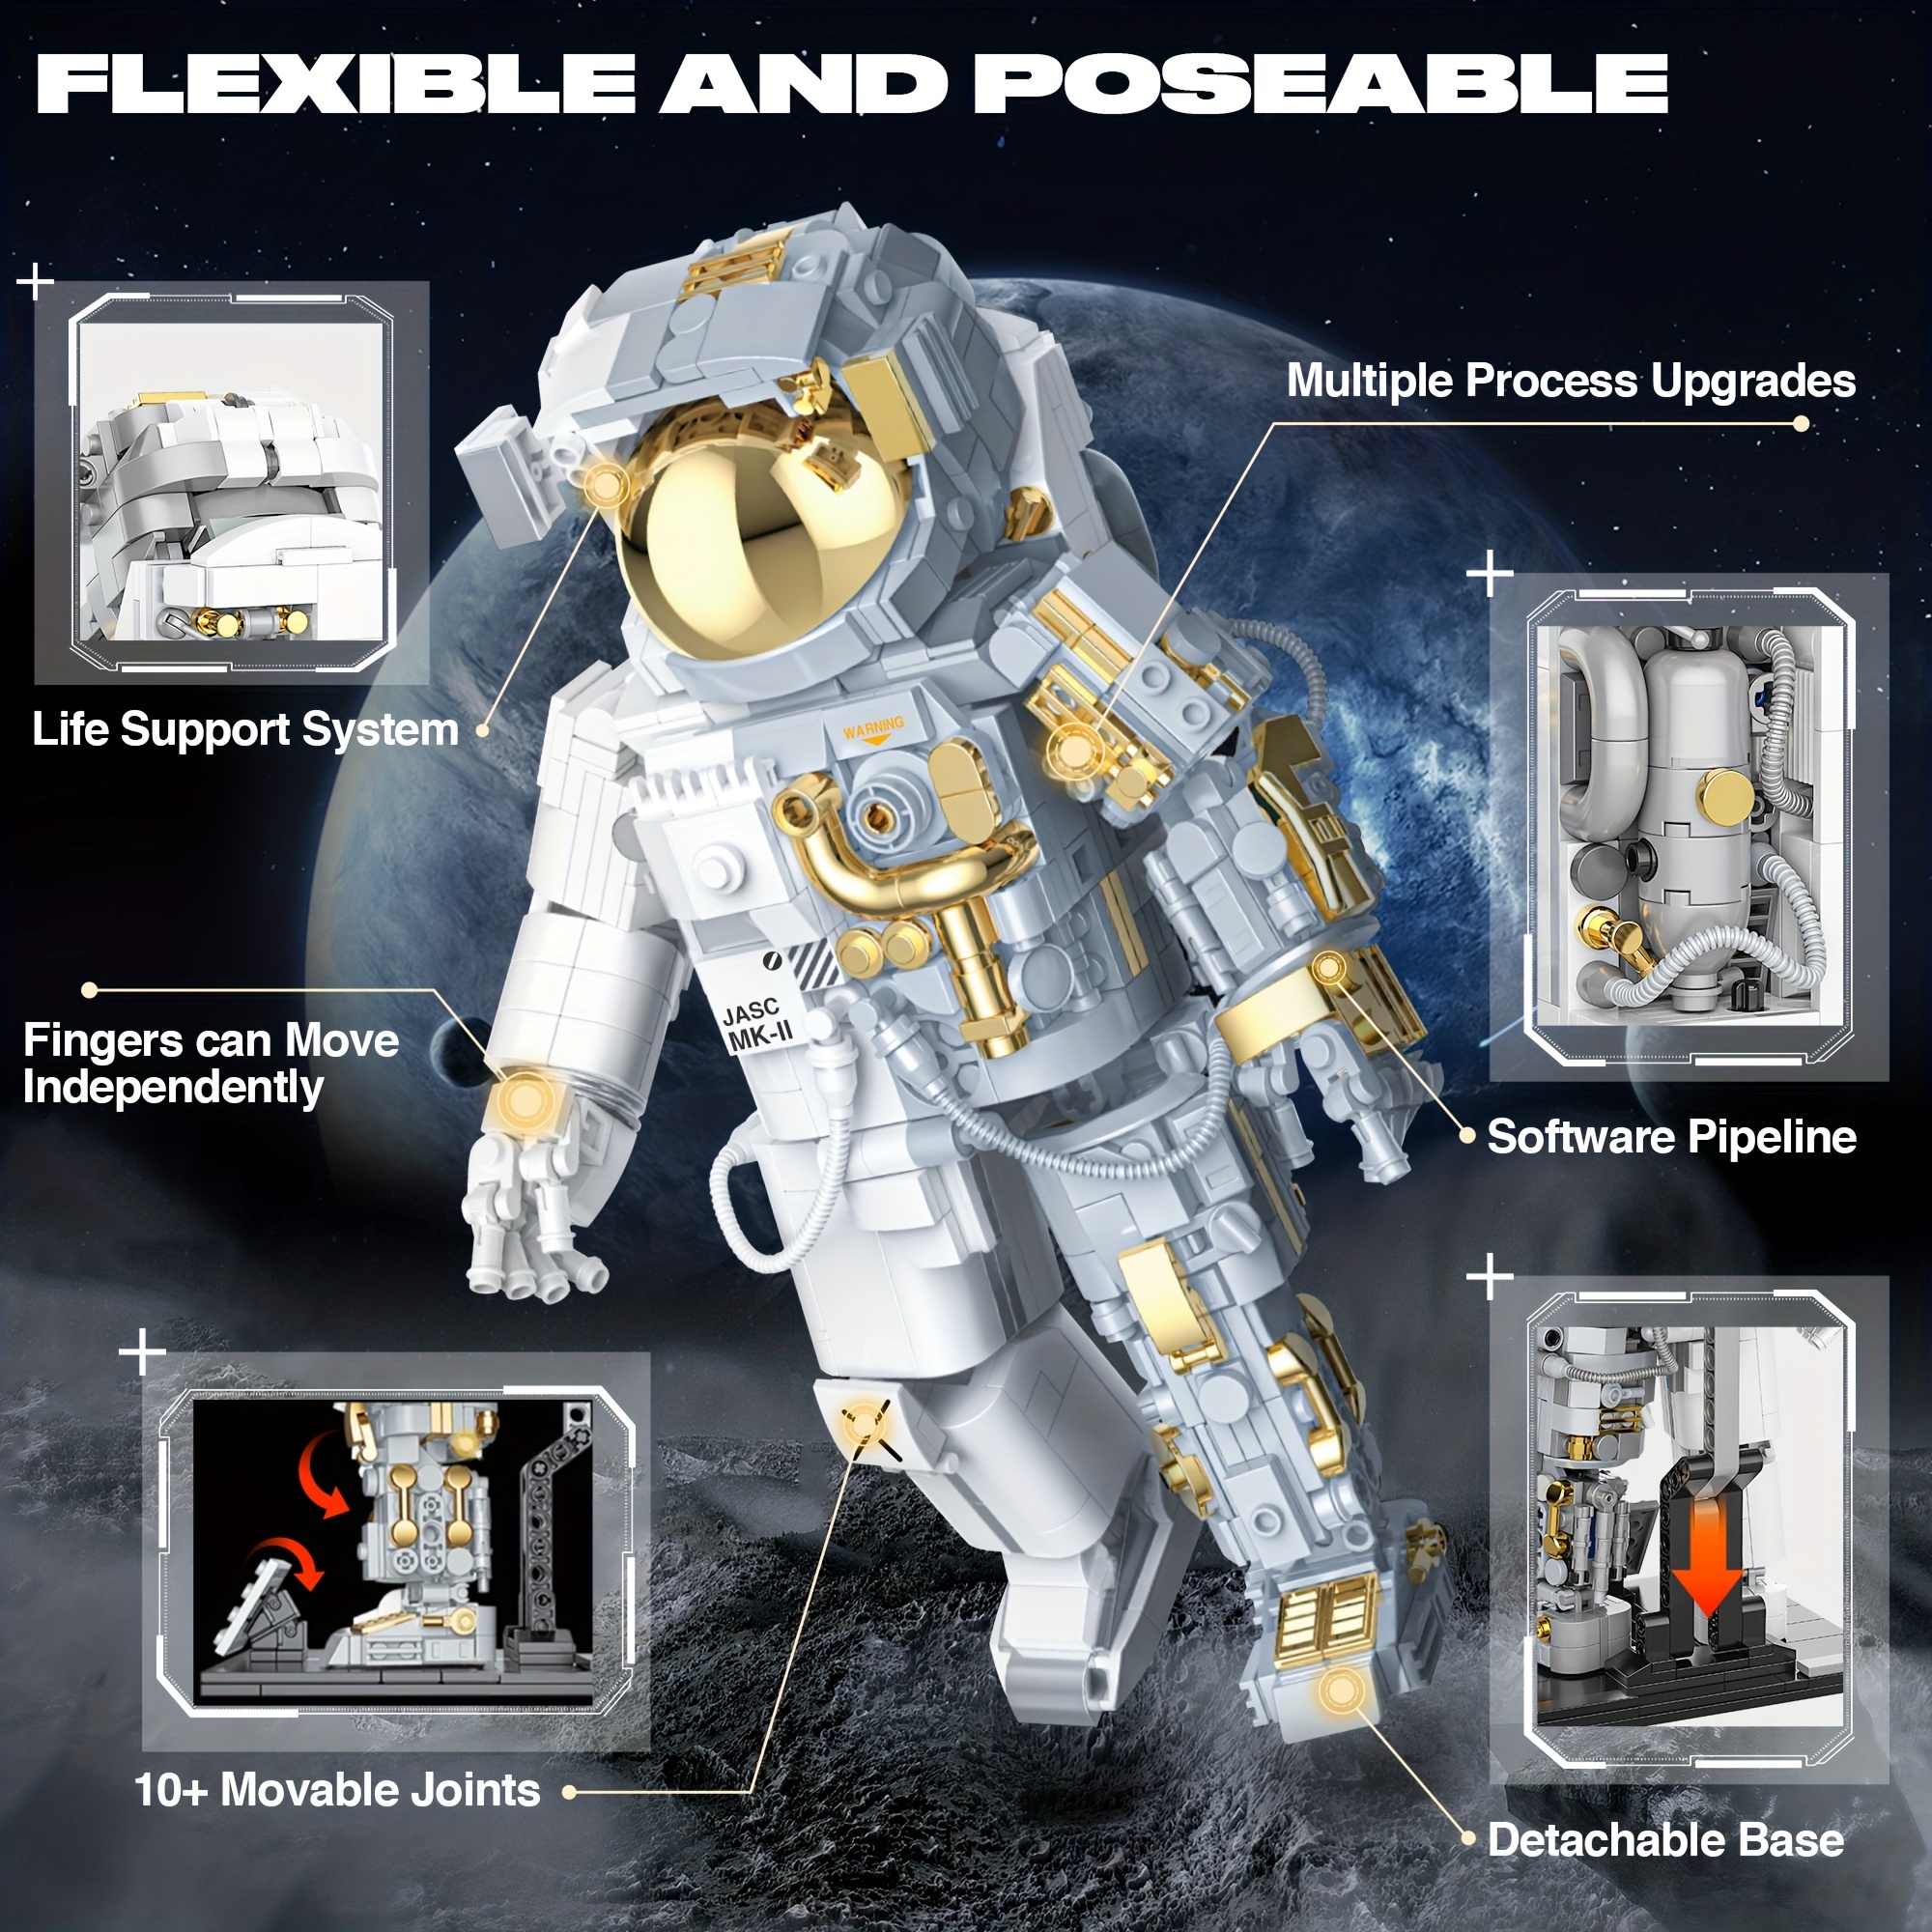 Erwachsene Astronaut Mini Bausteine Set , Cool Spielzeug mit  LED-Beleuchtung Bausatz , Perfekt Für Valentinstag Geschenk , 14 +, aktuelle Trends, günstig kaufen